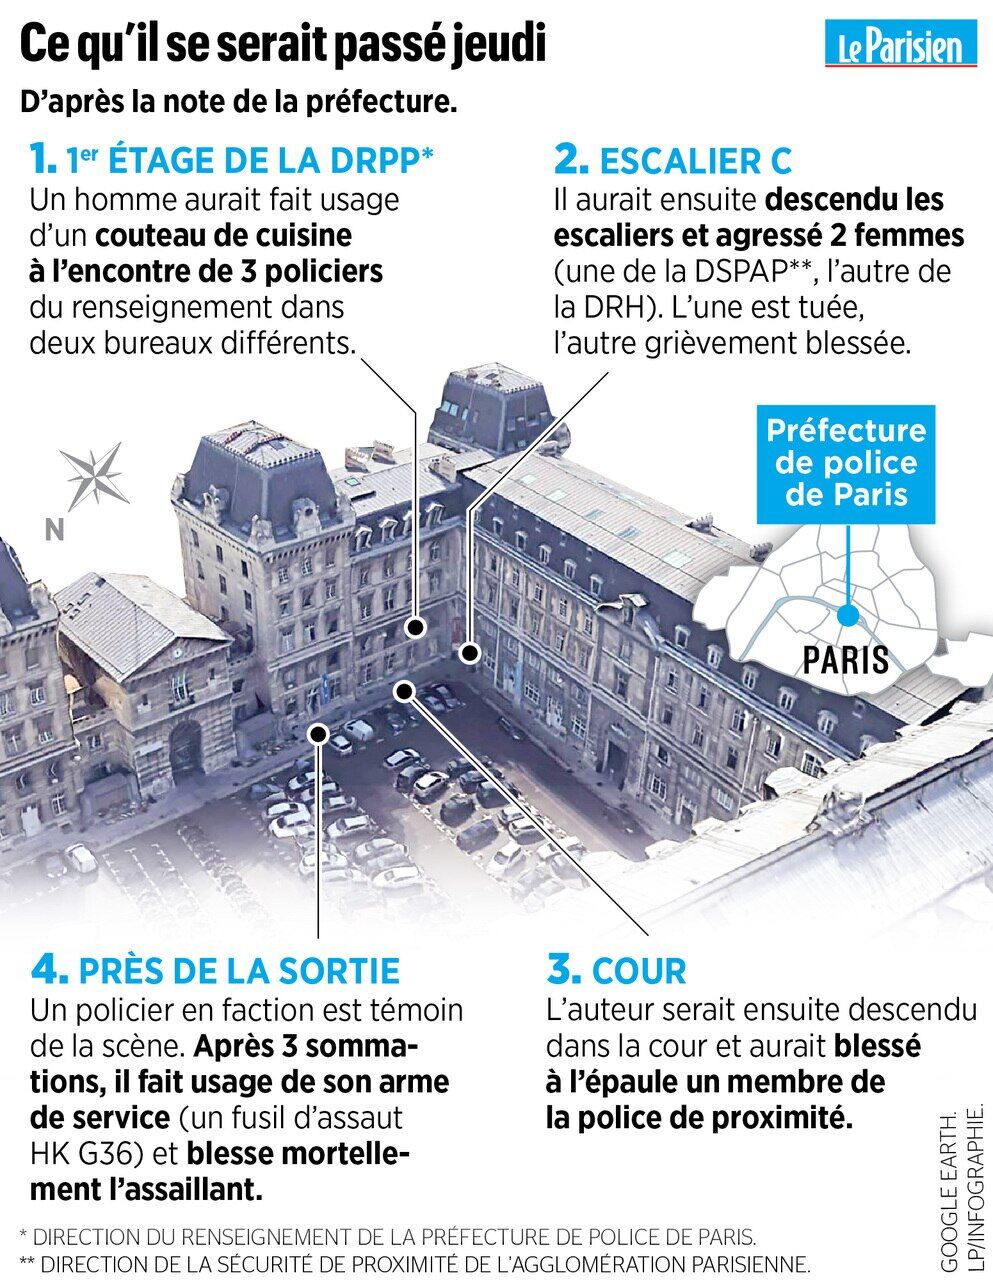 Attaque à la préfecture de police de Paris : une tuerie et des questions